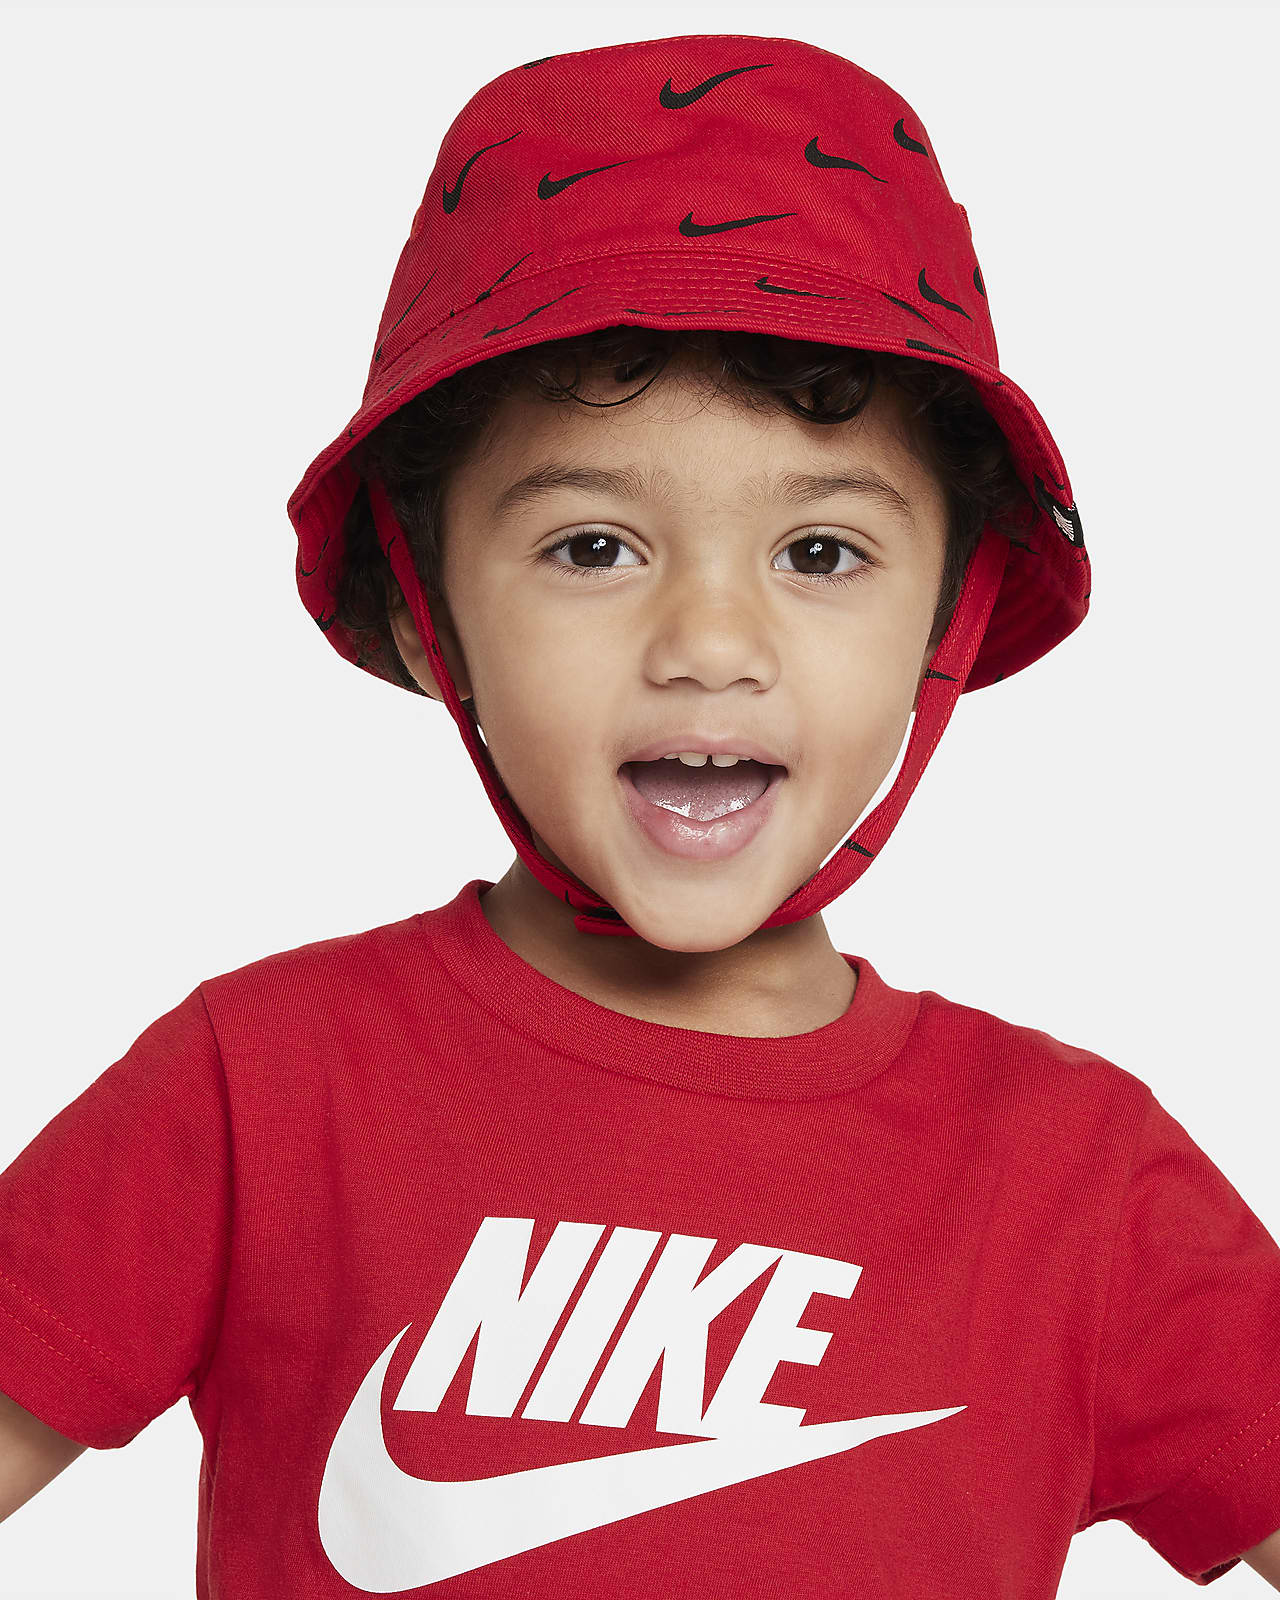  Nike Bucket Hat Kids